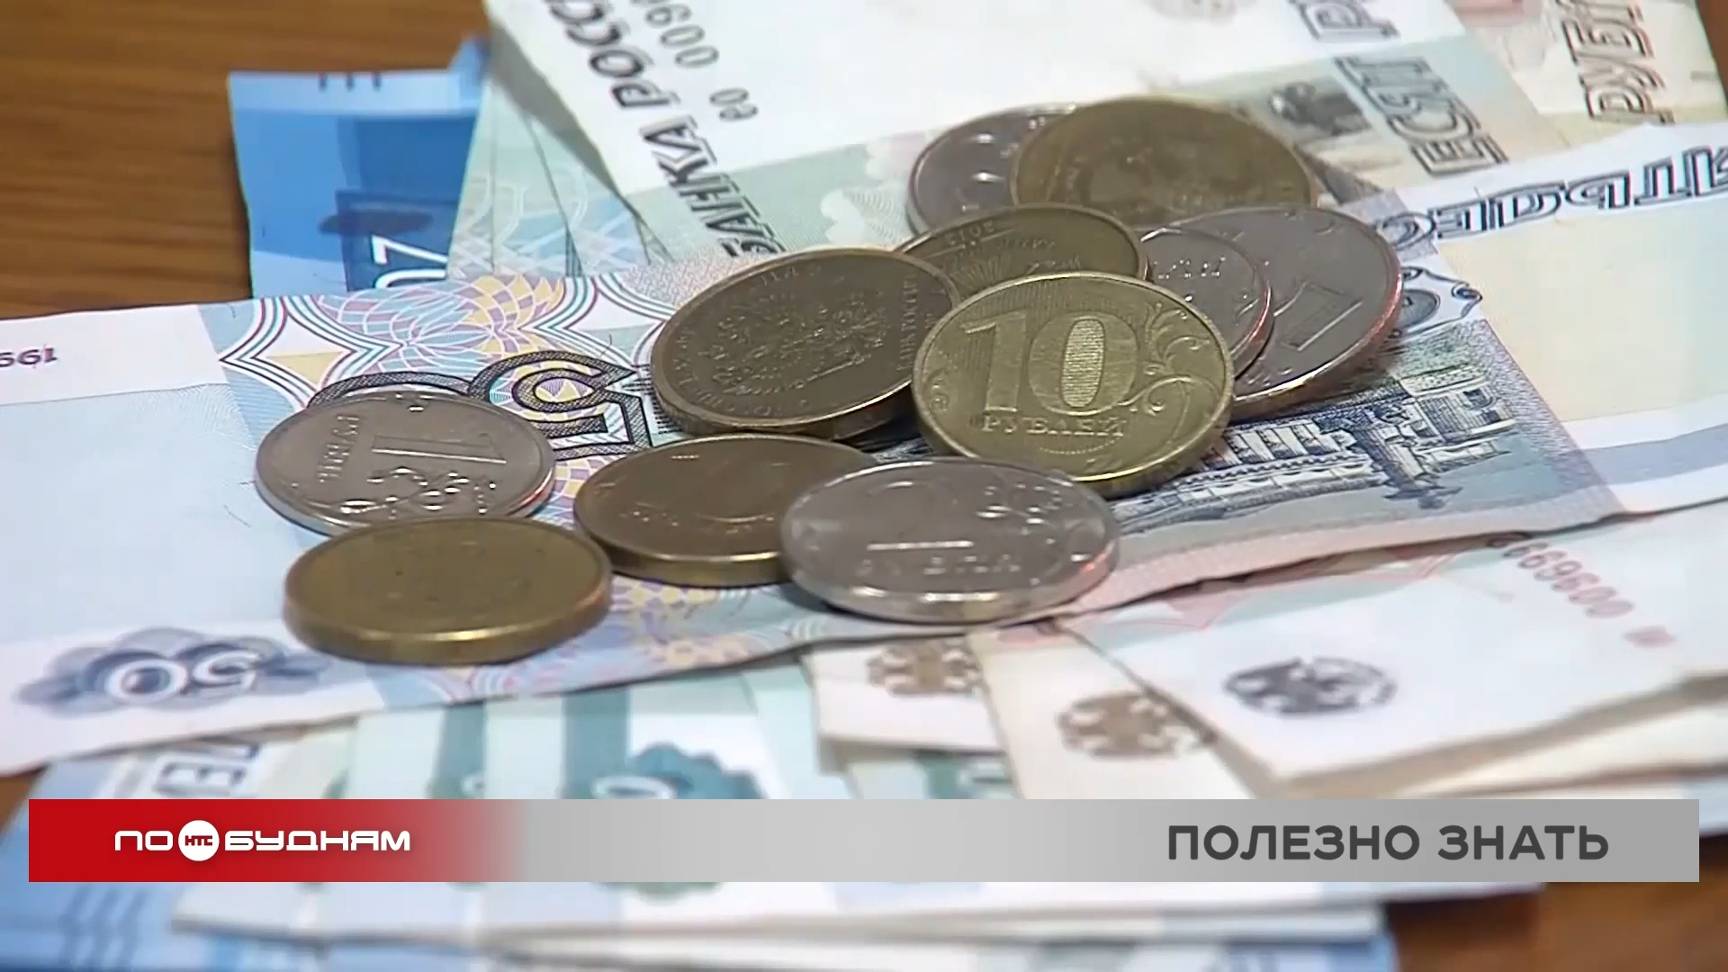 Пособие на покупку школьной формы в Иркутской области составляет 1401 рубль